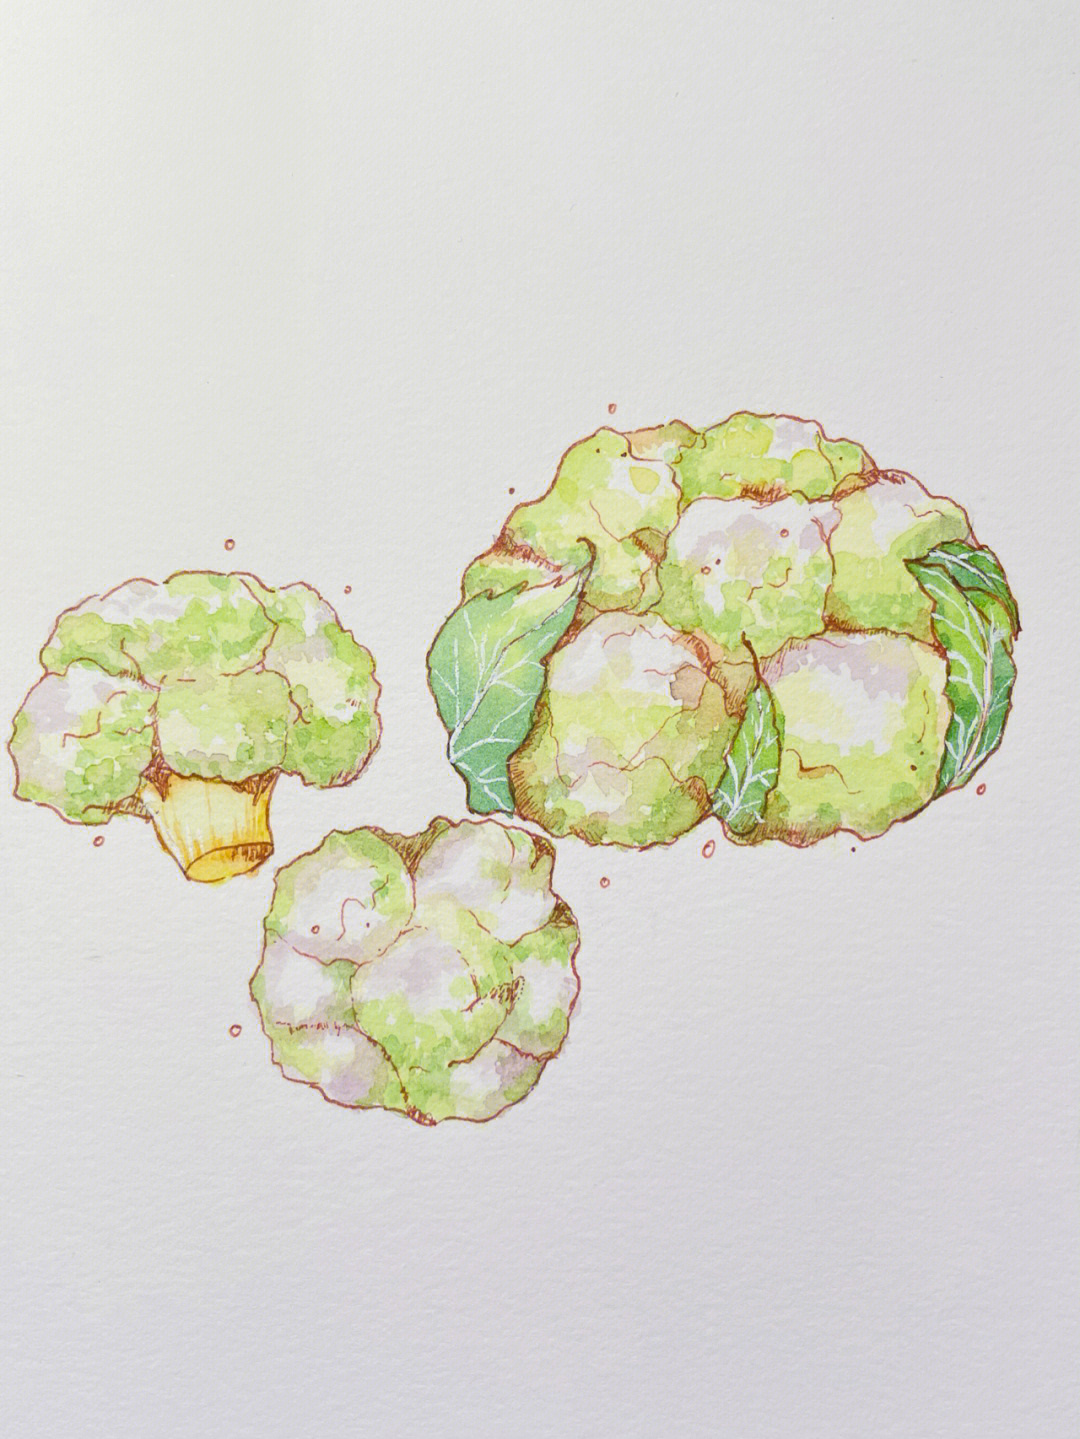 超级简单的水彩画来啦,今天是花菜,也是我很喜欢吃的噢